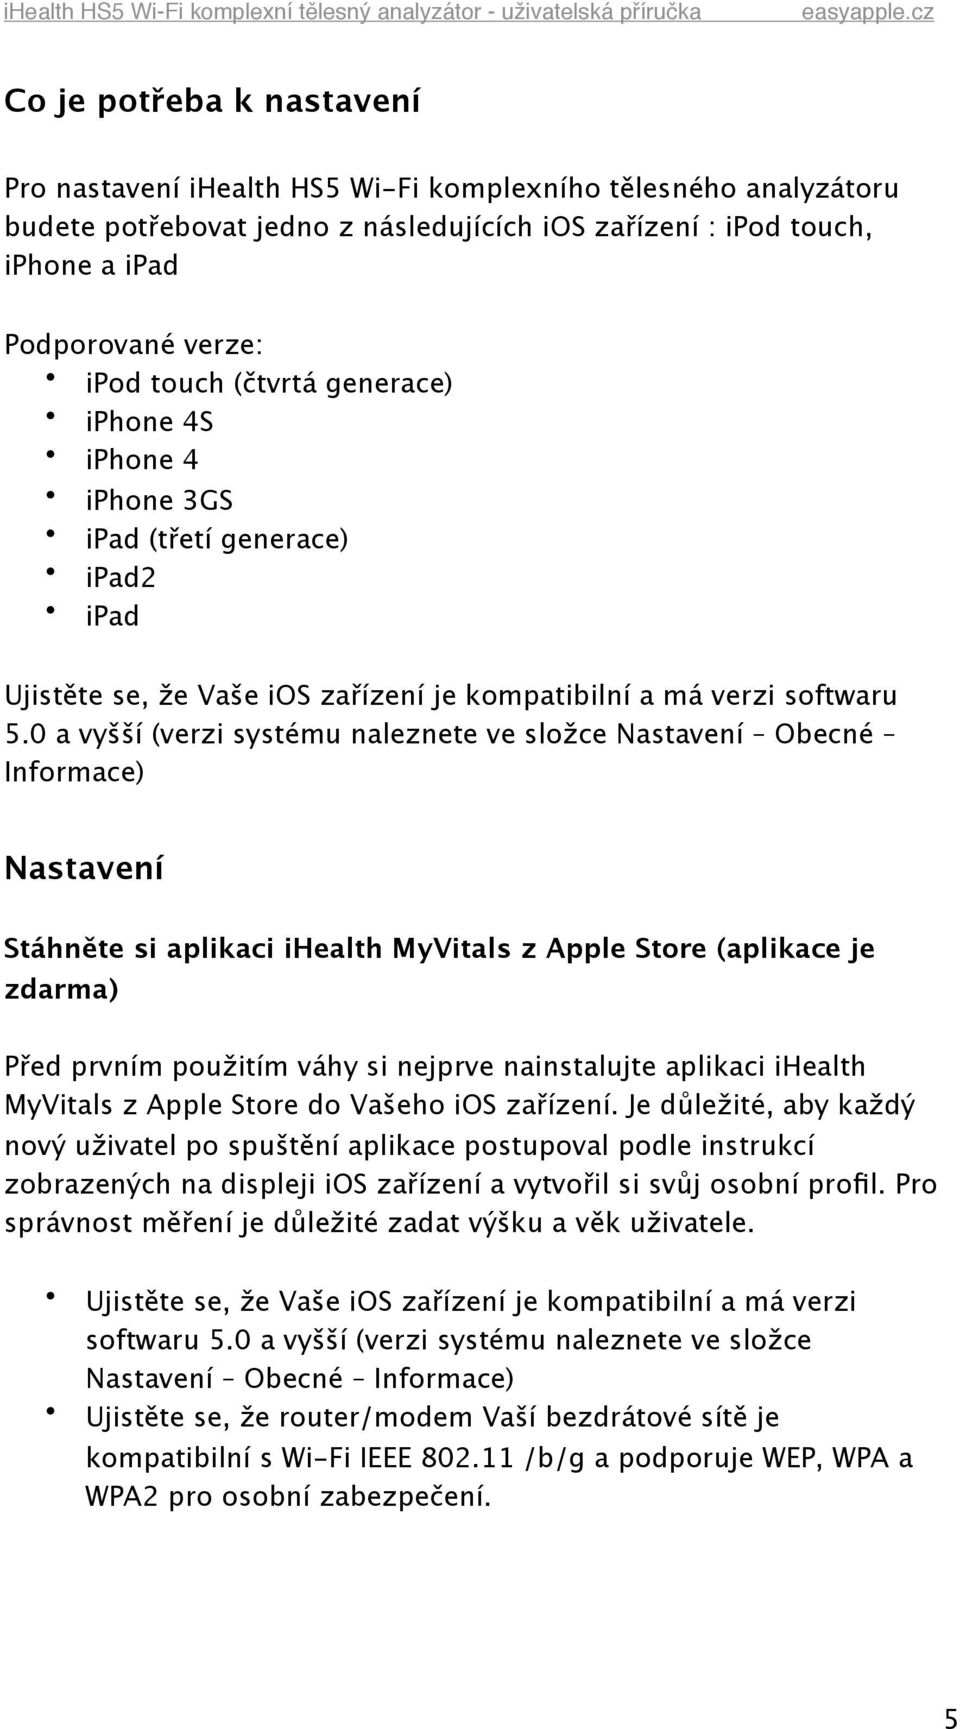 0 a vyšší (verzi systému naleznete ve složce Nastavení Obecné Informace) Nastavení Stáhněte si aplikaci ihealth MyVitals z Apple Store (aplikace je zdarma) Před prvním použitím váhy si nejprve